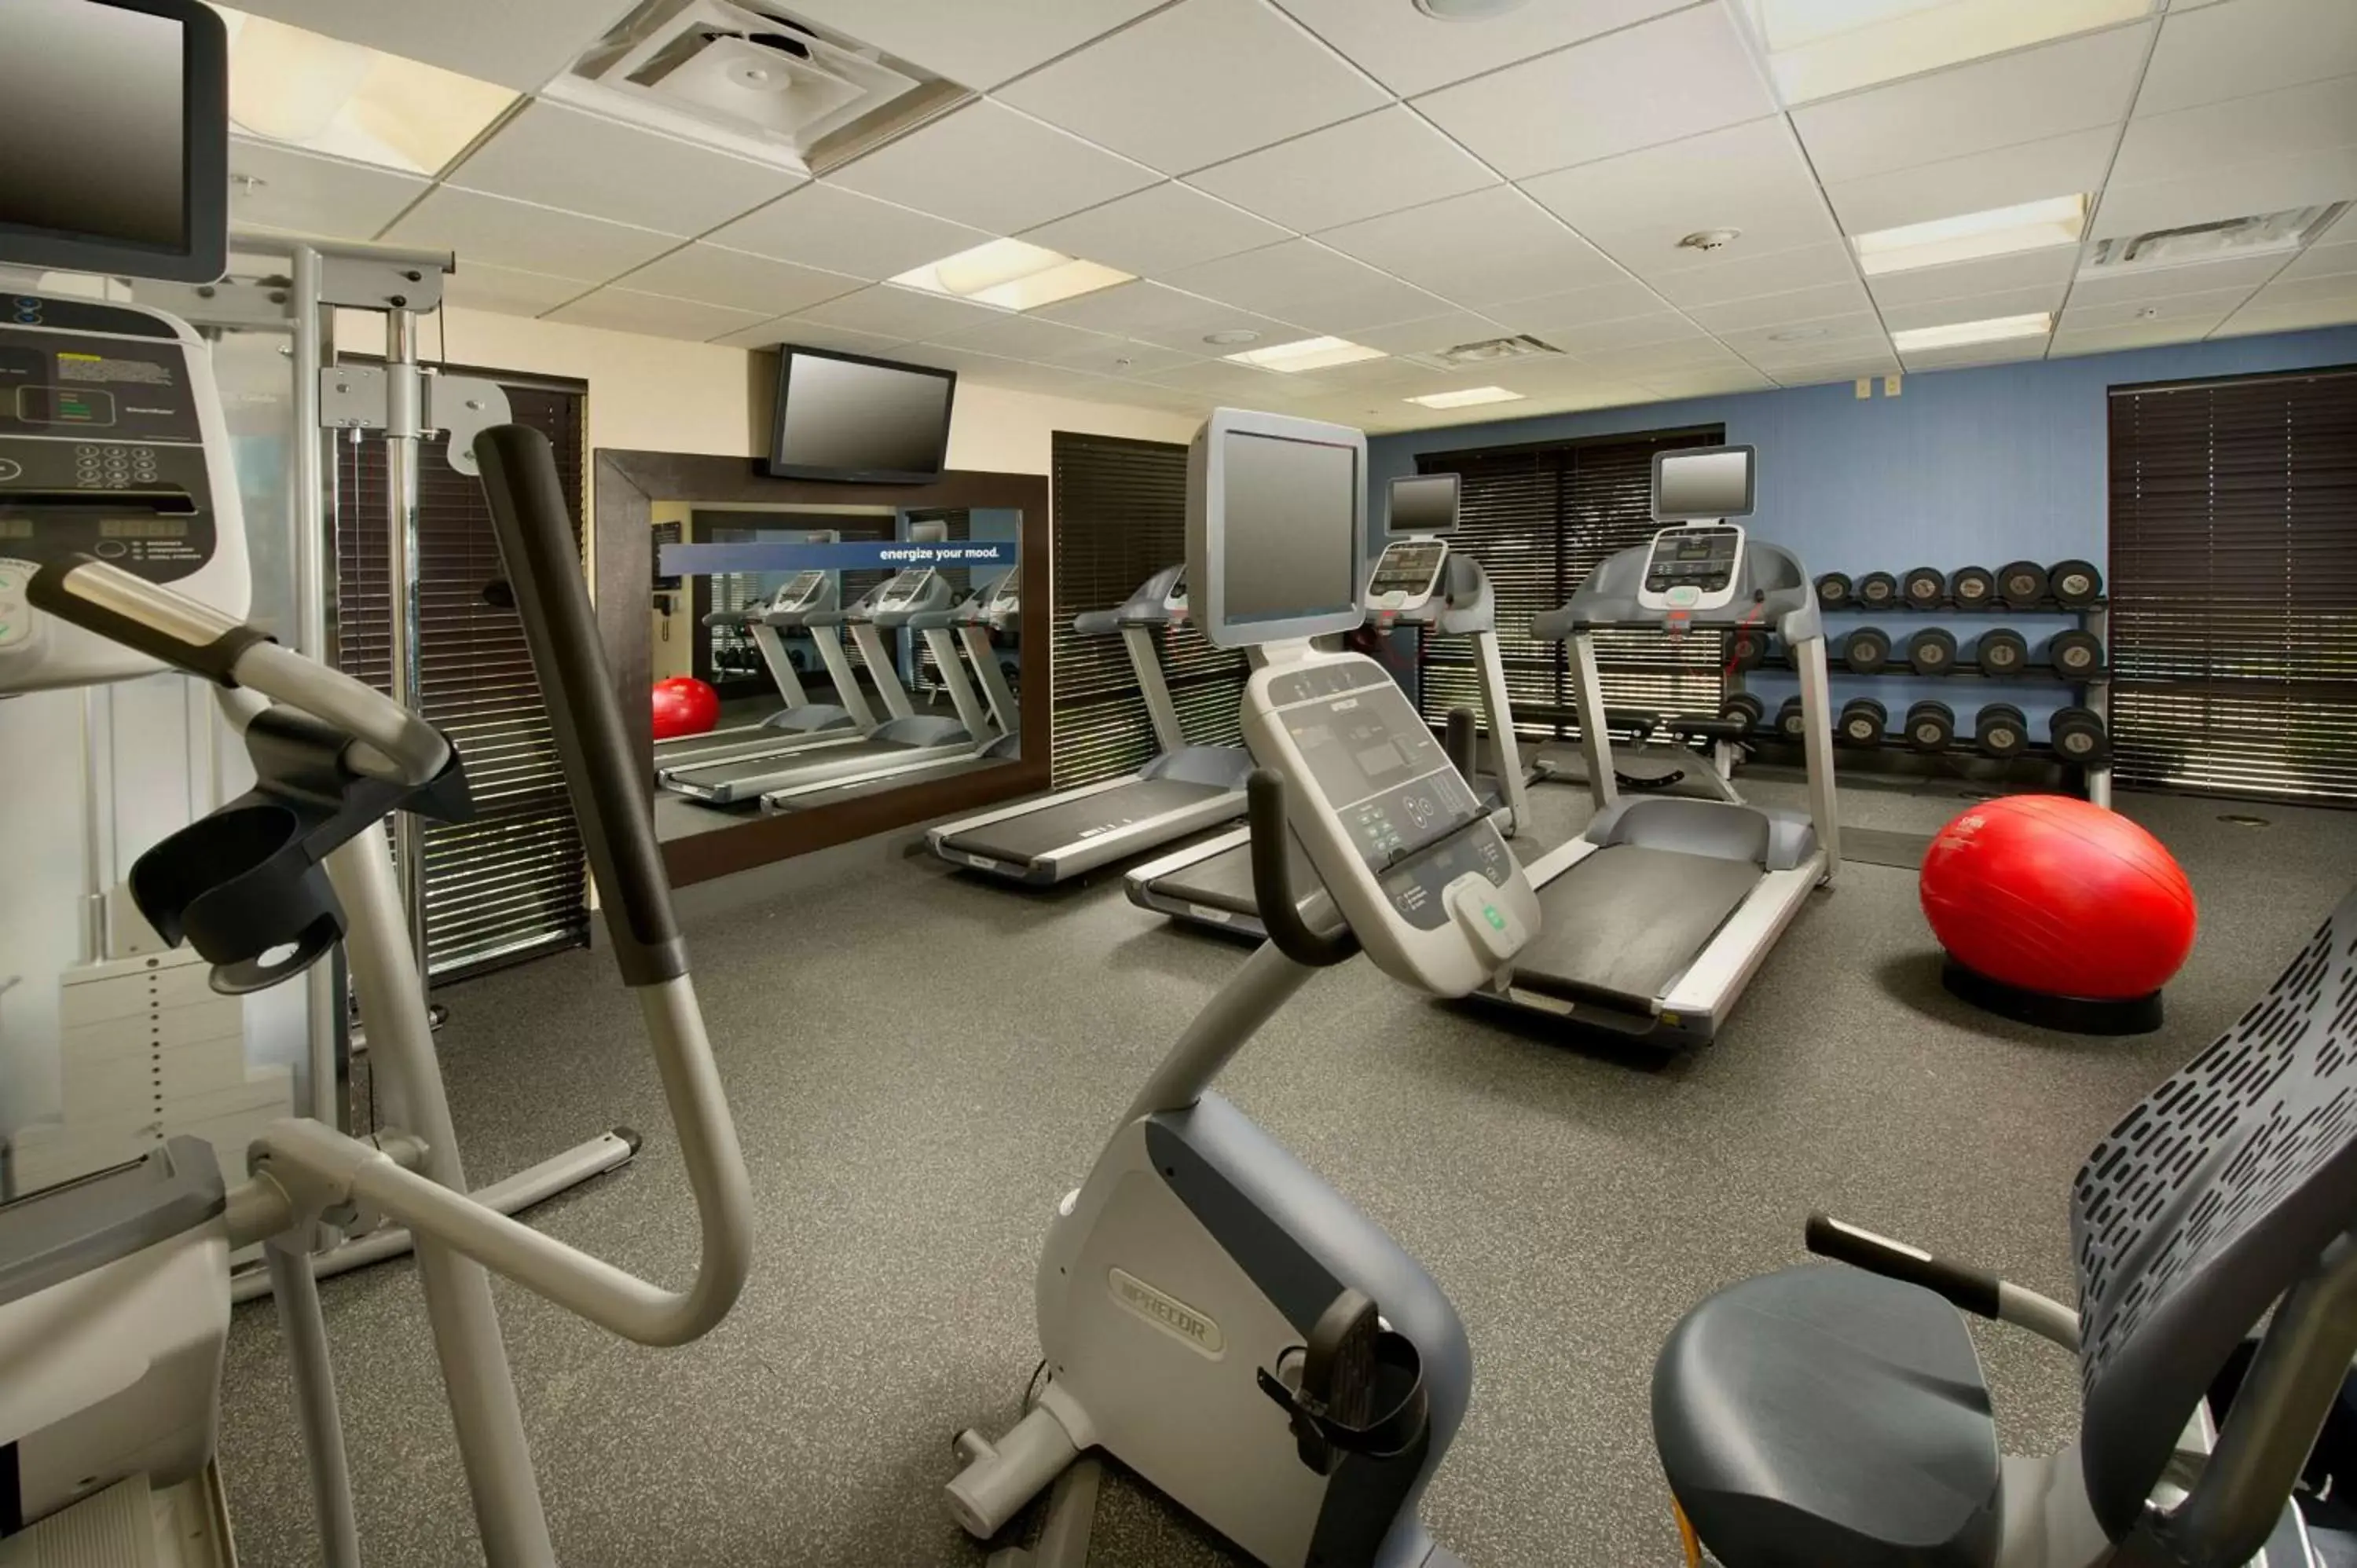 Fitness centre/facilities, Fitness Center/Facilities in Hampton Inn Uvalde